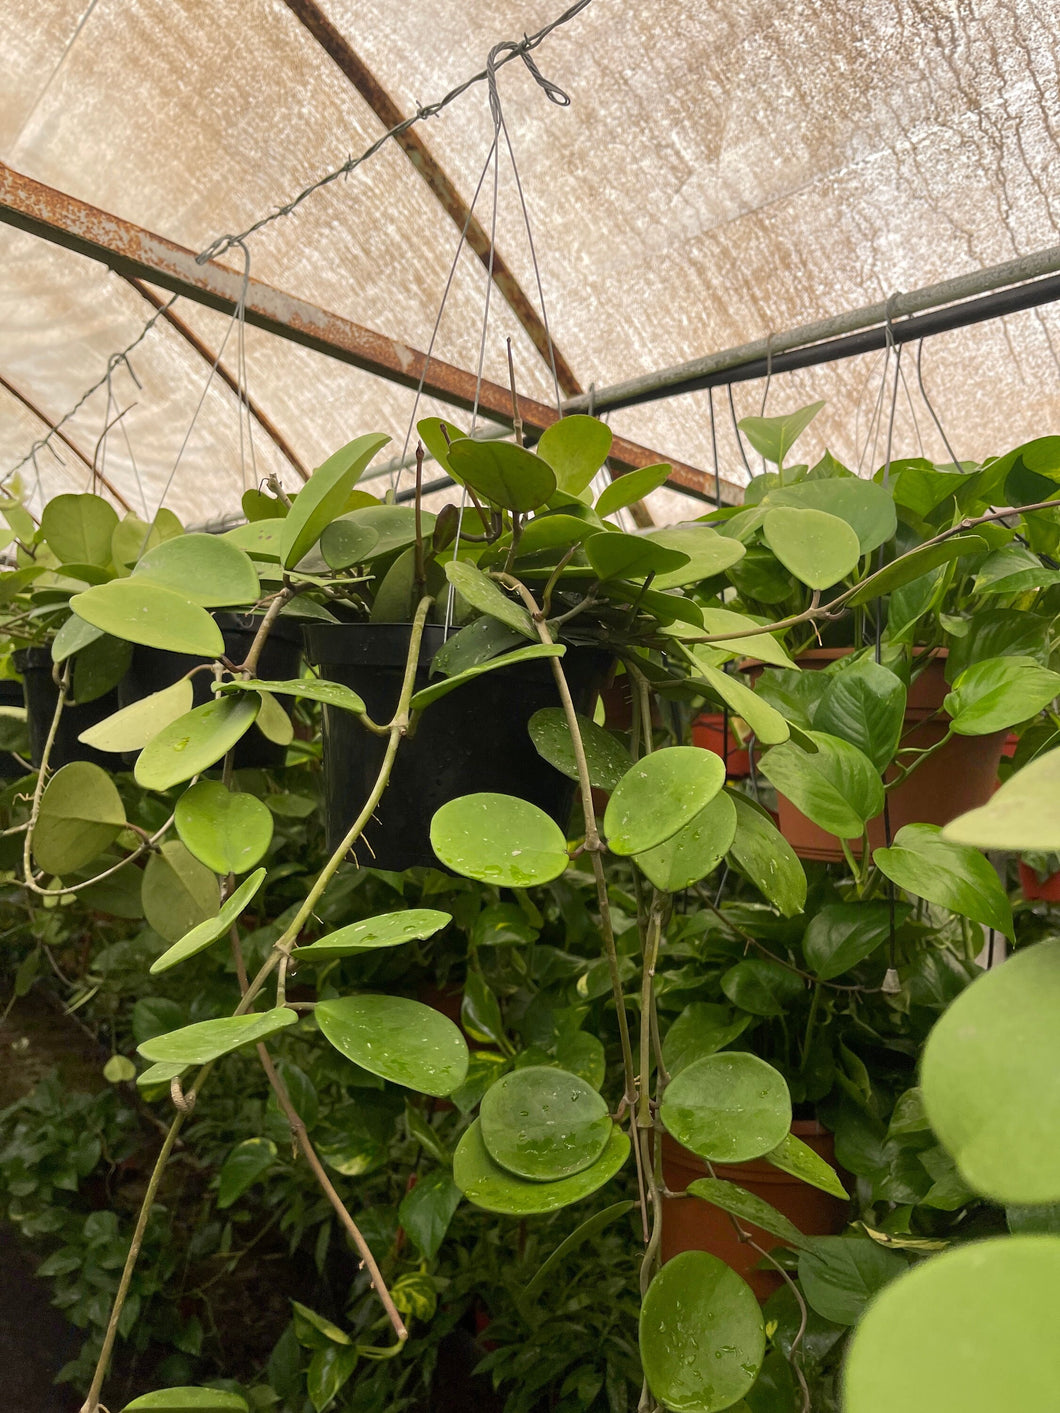 Hoya Obovata 8’’ pot Trailing Long Live plant